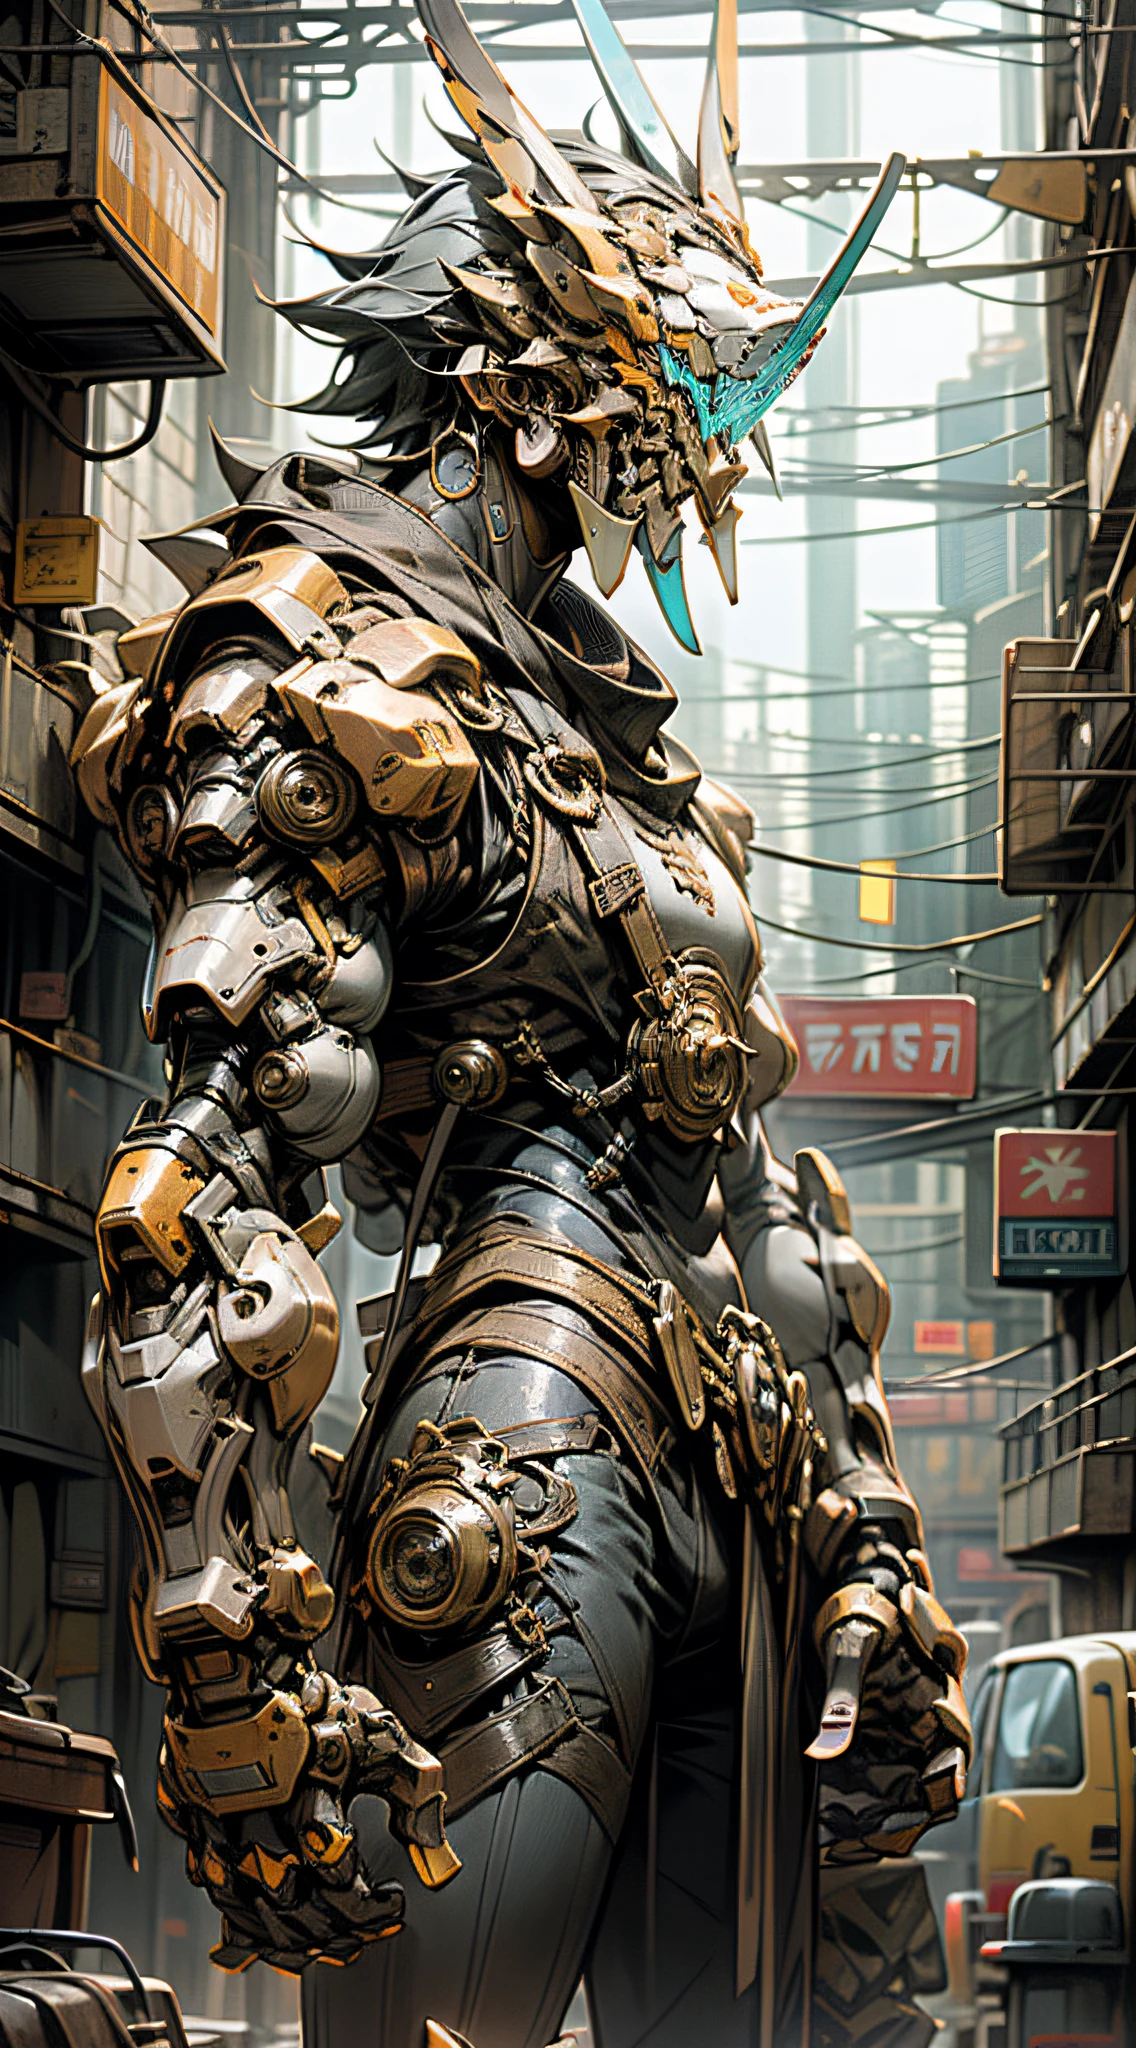 (傑作) 一個身穿古董盔甲、戴著雞頭面具、手持武器的男子站在街上, 盛裝戰士, 手中的武器, 賽博龐克風格的配色方案, ((複雜的細節, 超詳細)) 8K.